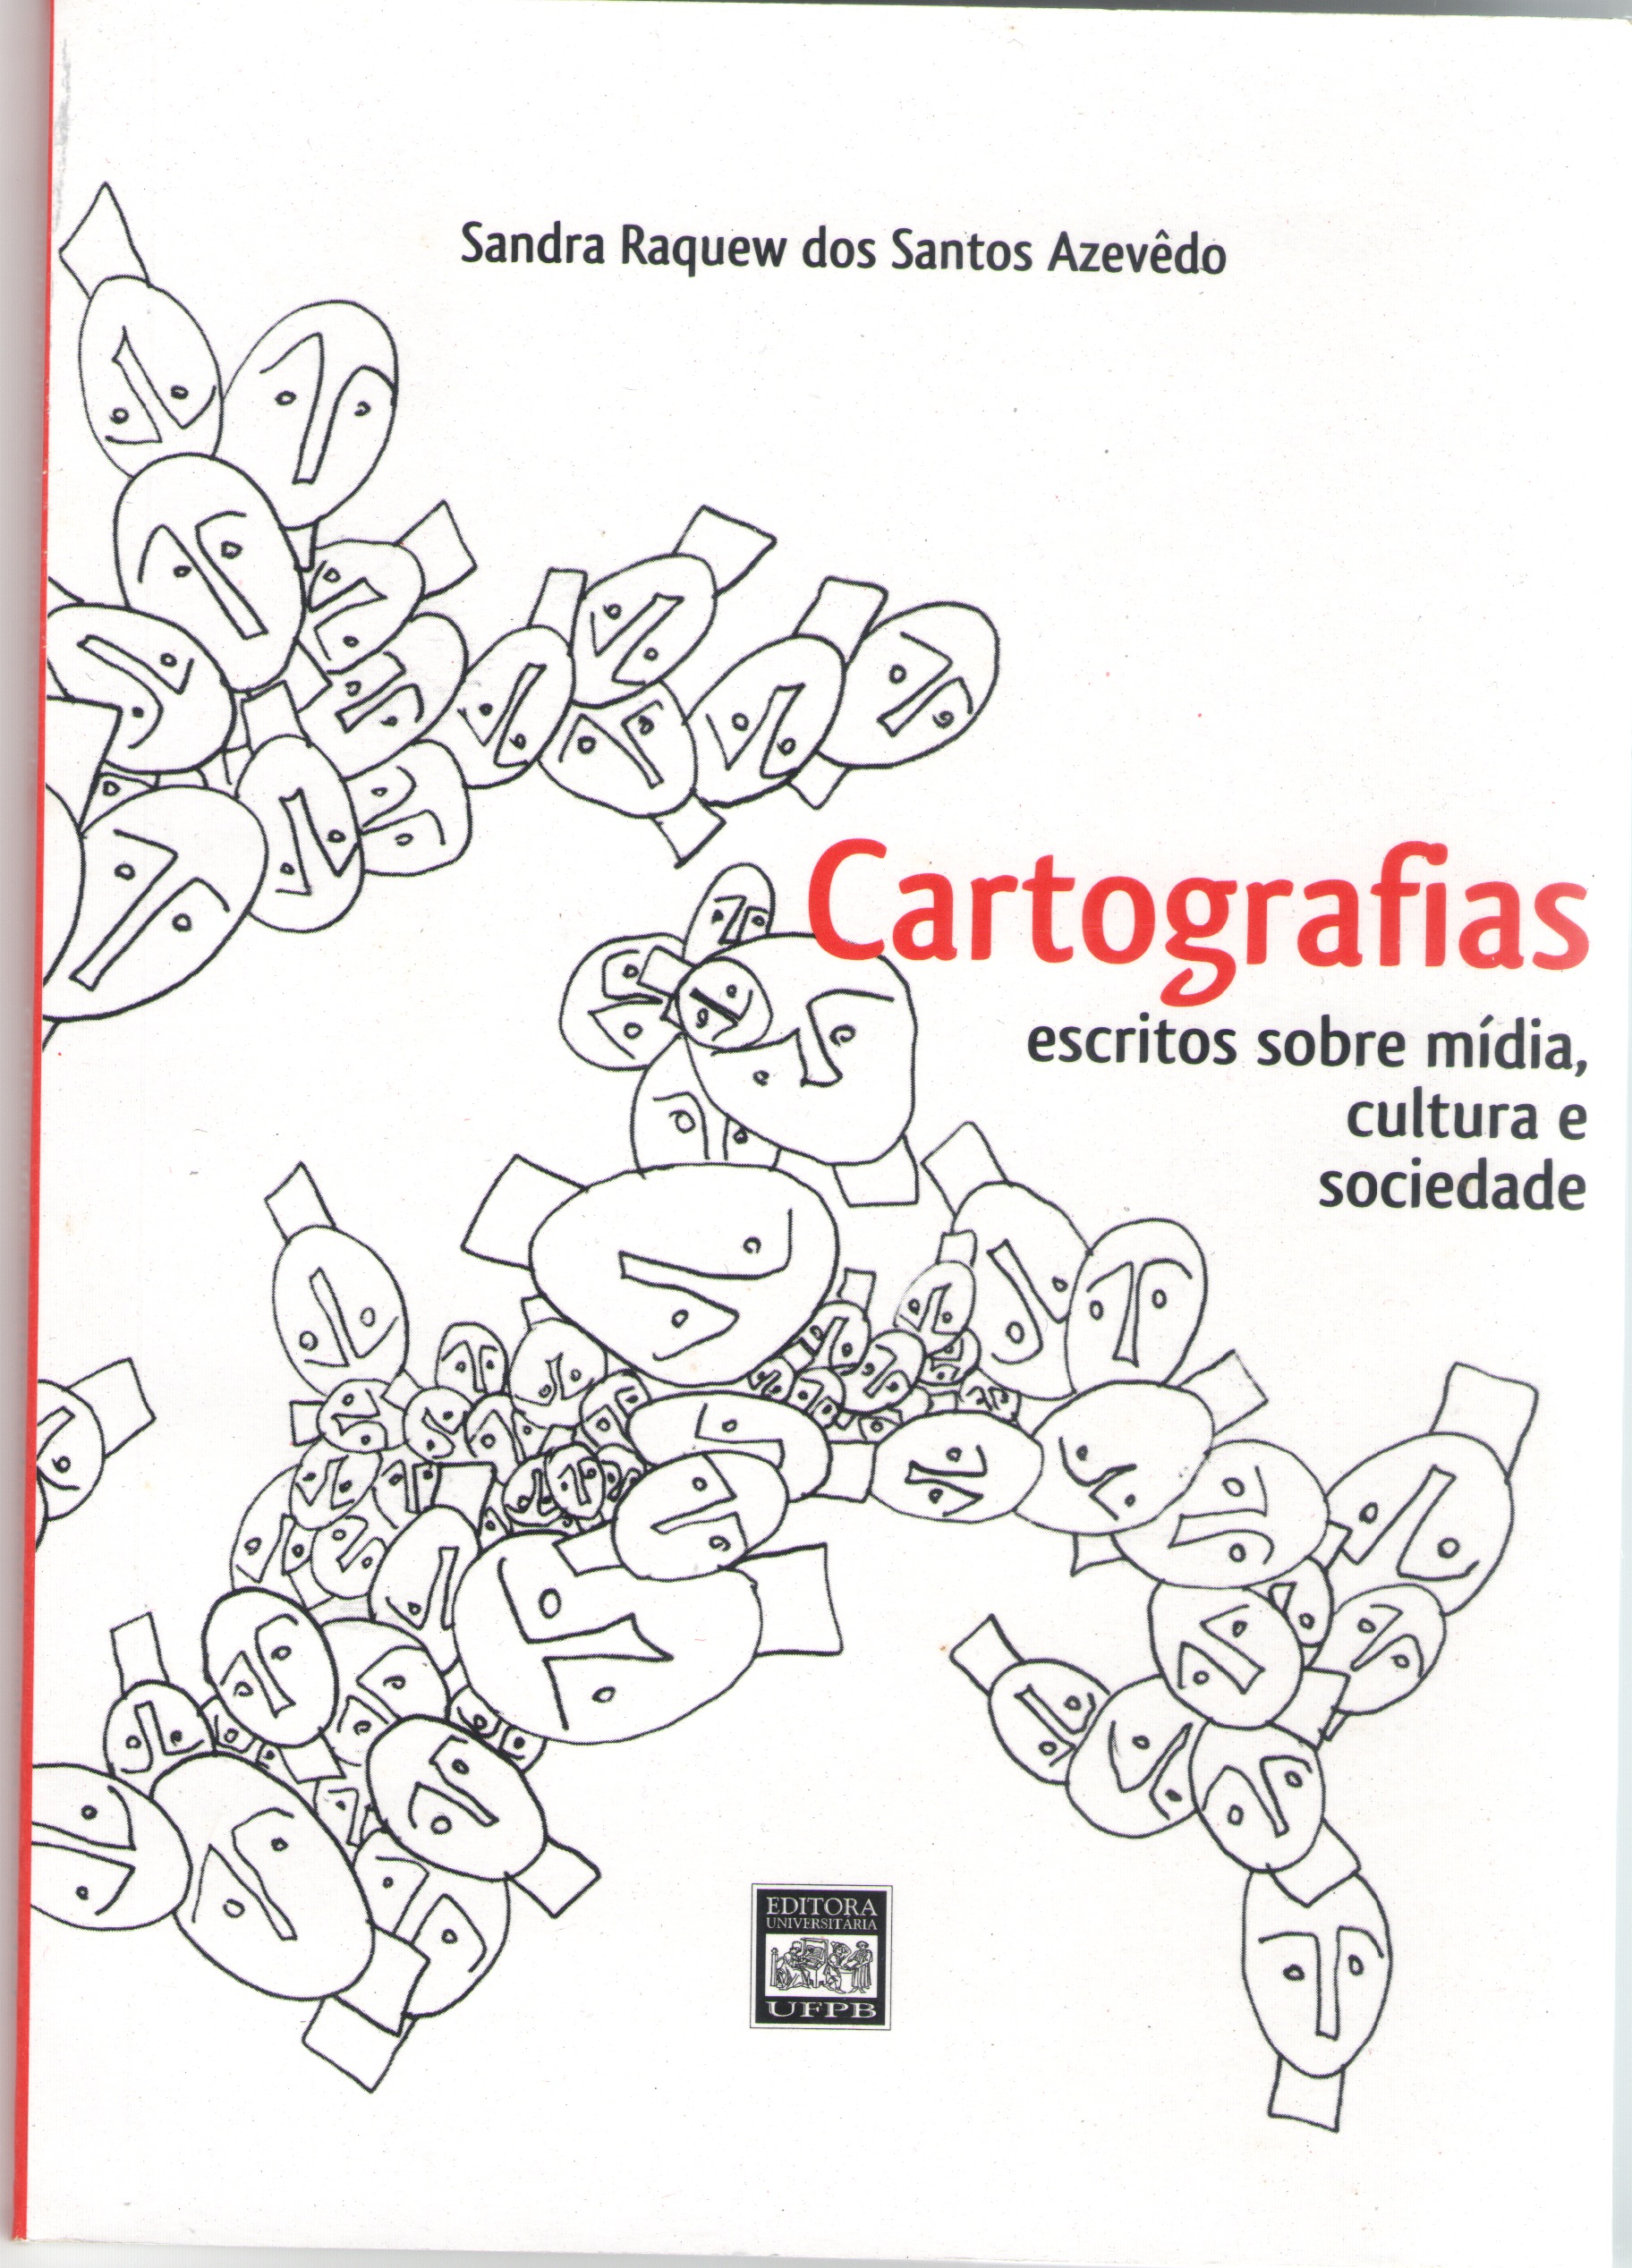 Cartografias: escritos sobre mídia, cultura e sociedade (2008)